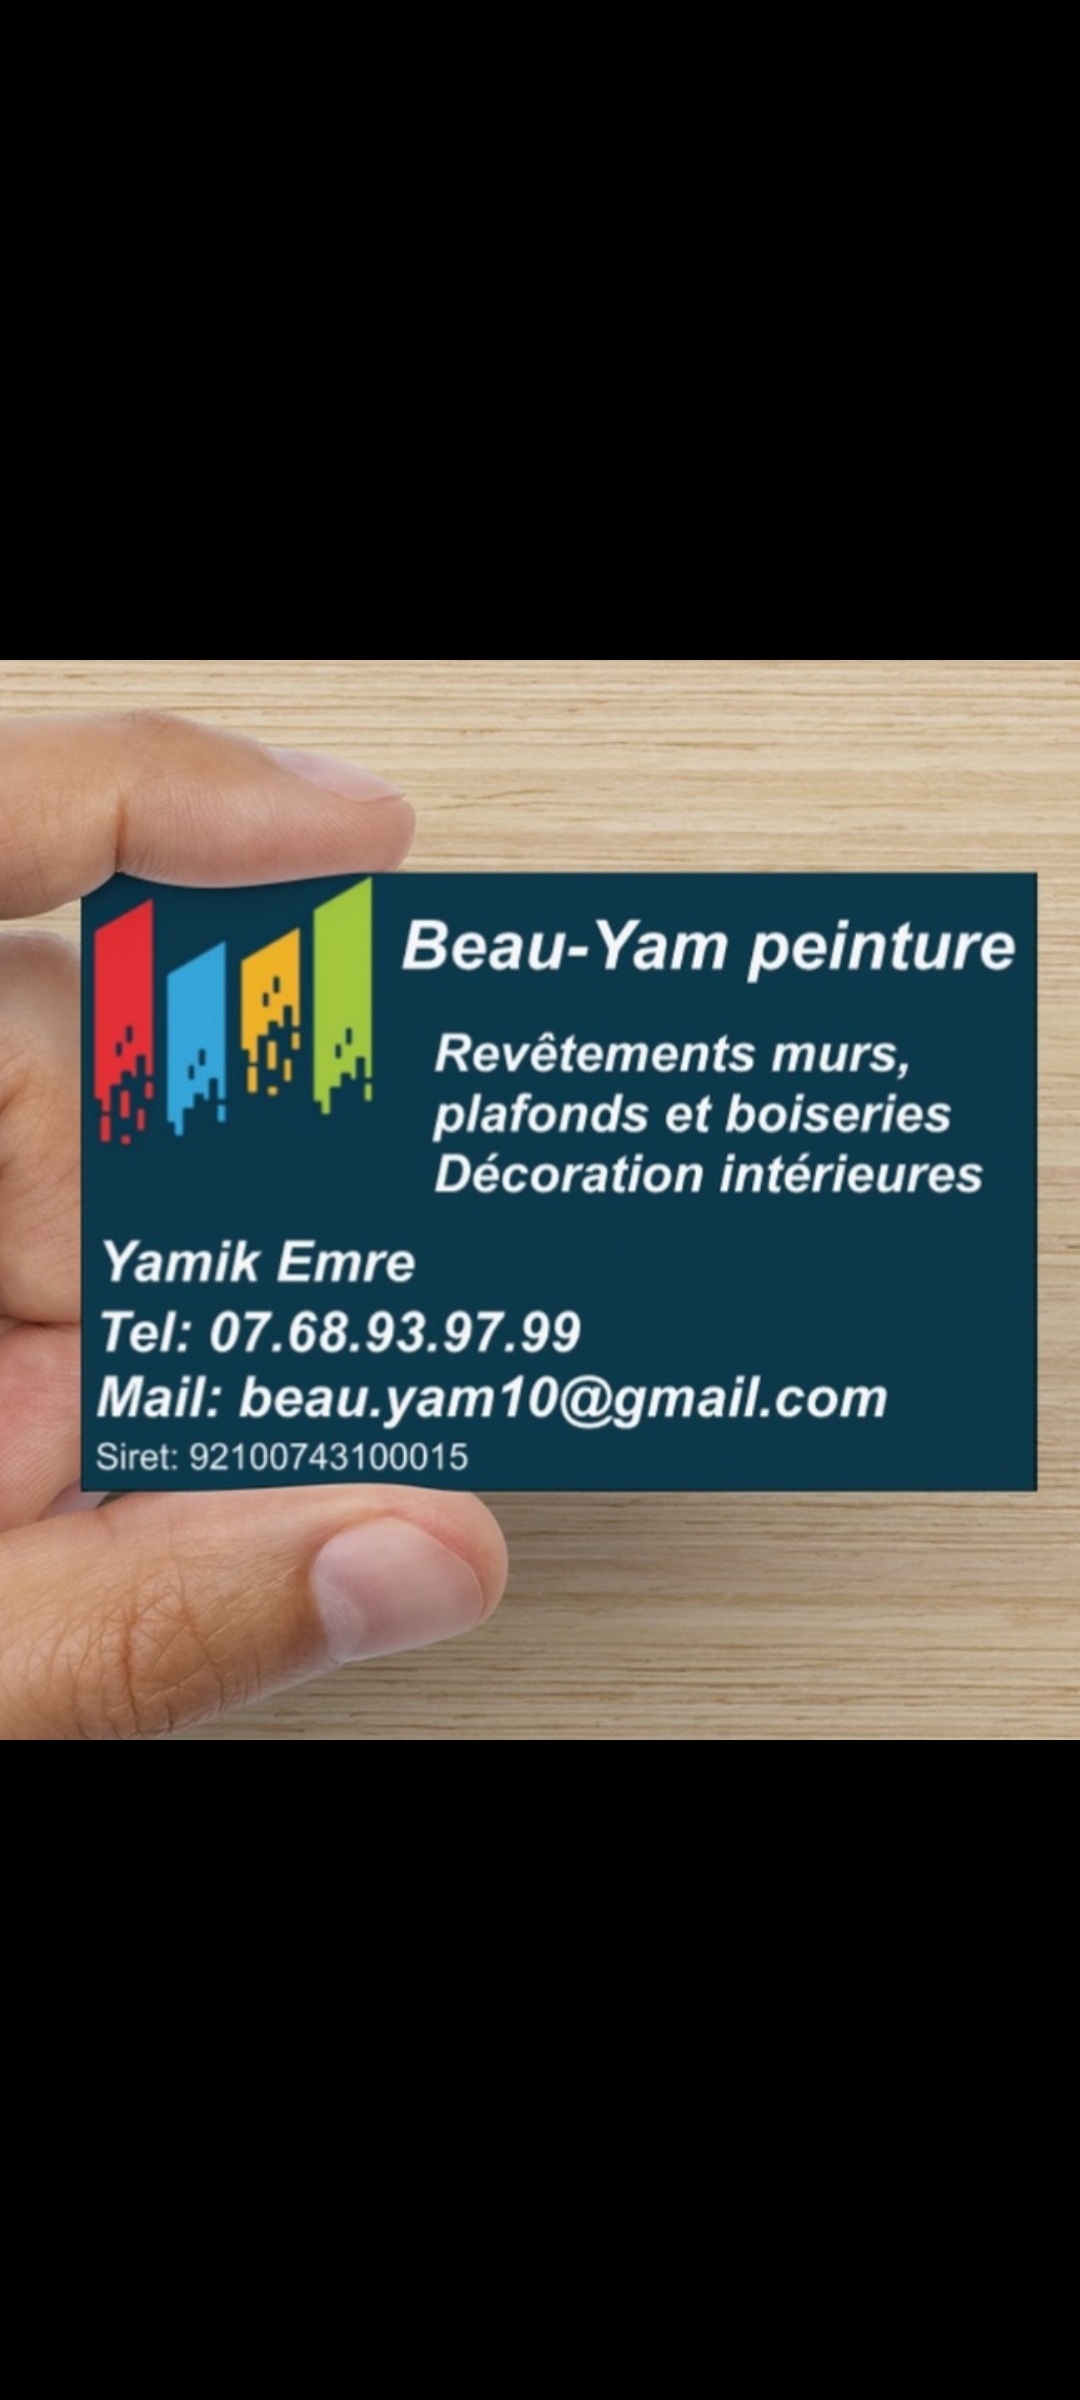 Logo de Yamik Emre, société de travaux en Rénovation complète d'appartements, pavillons, bureaux